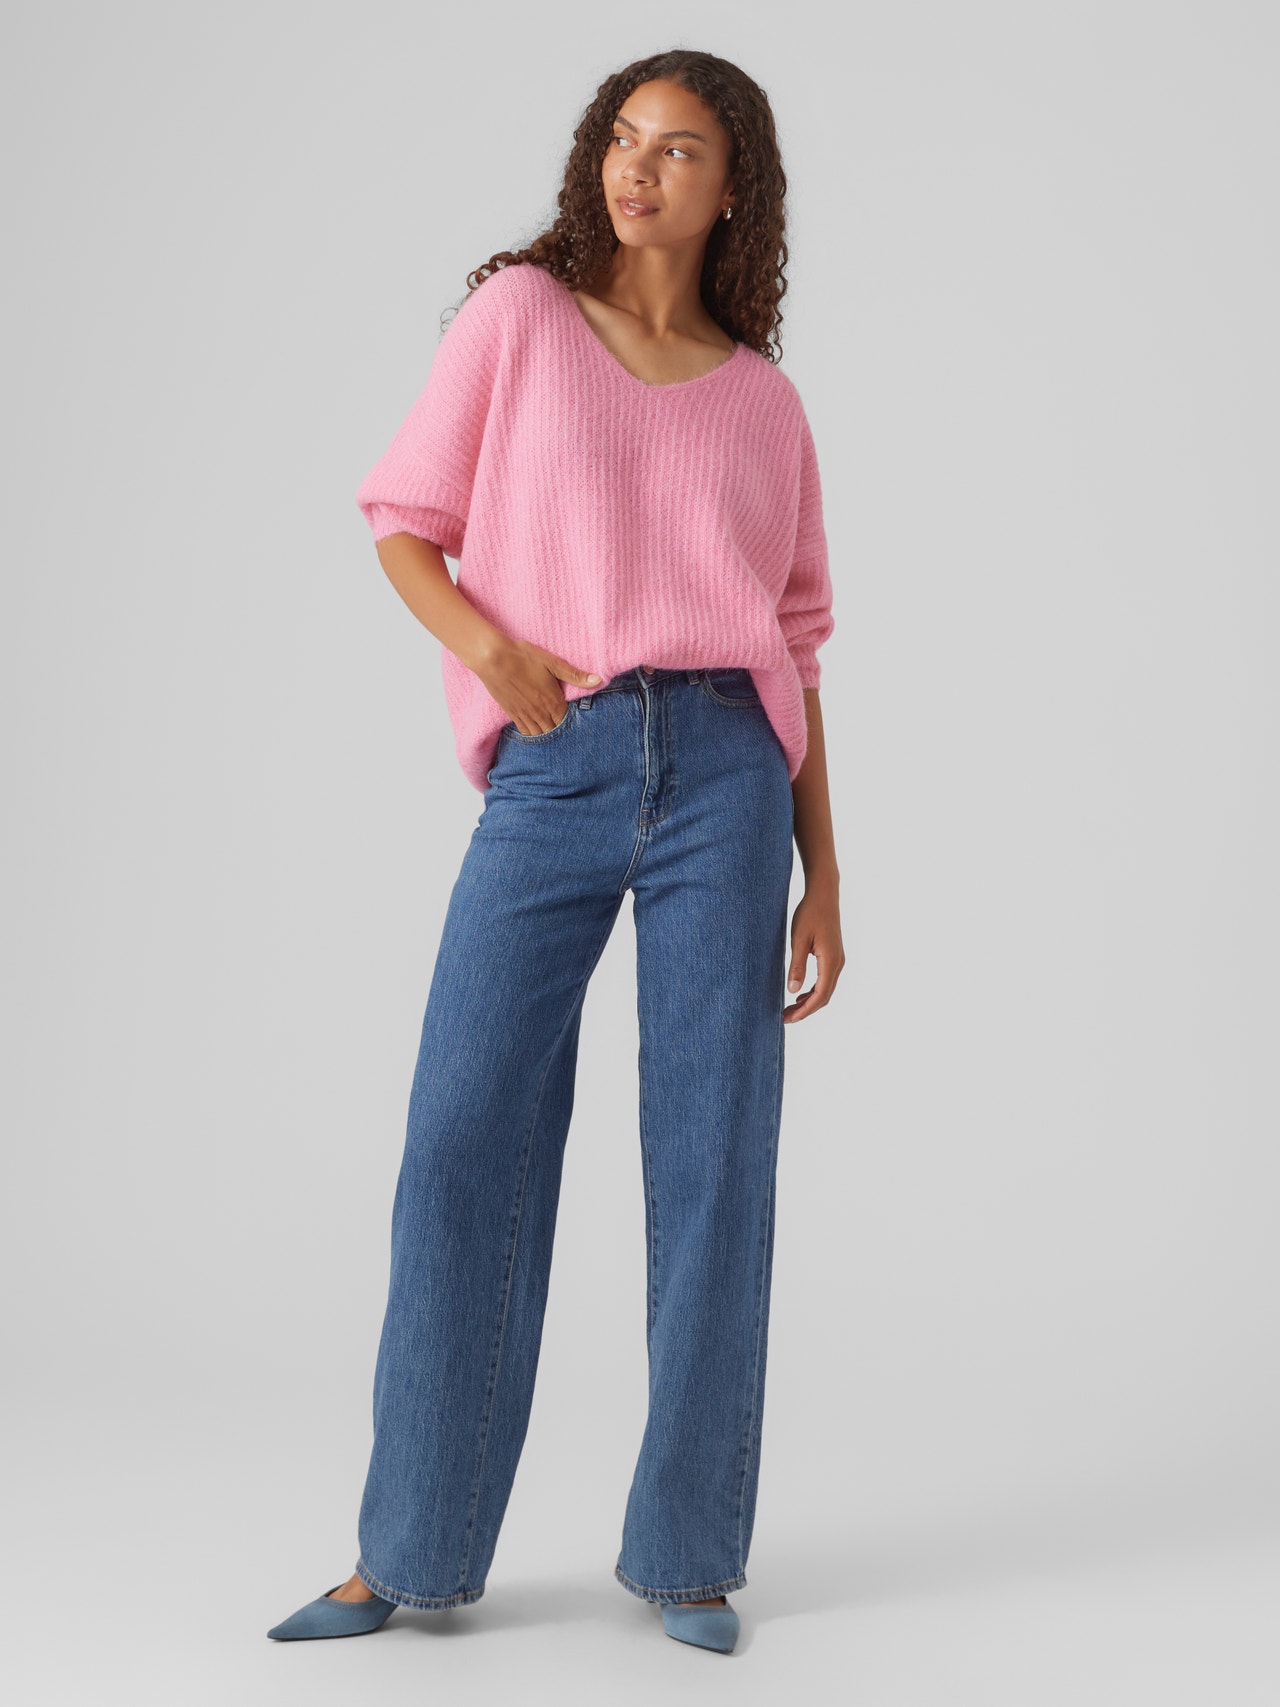 Vero Moda VMJULIE Pullover -Sachet Pink - 10302656